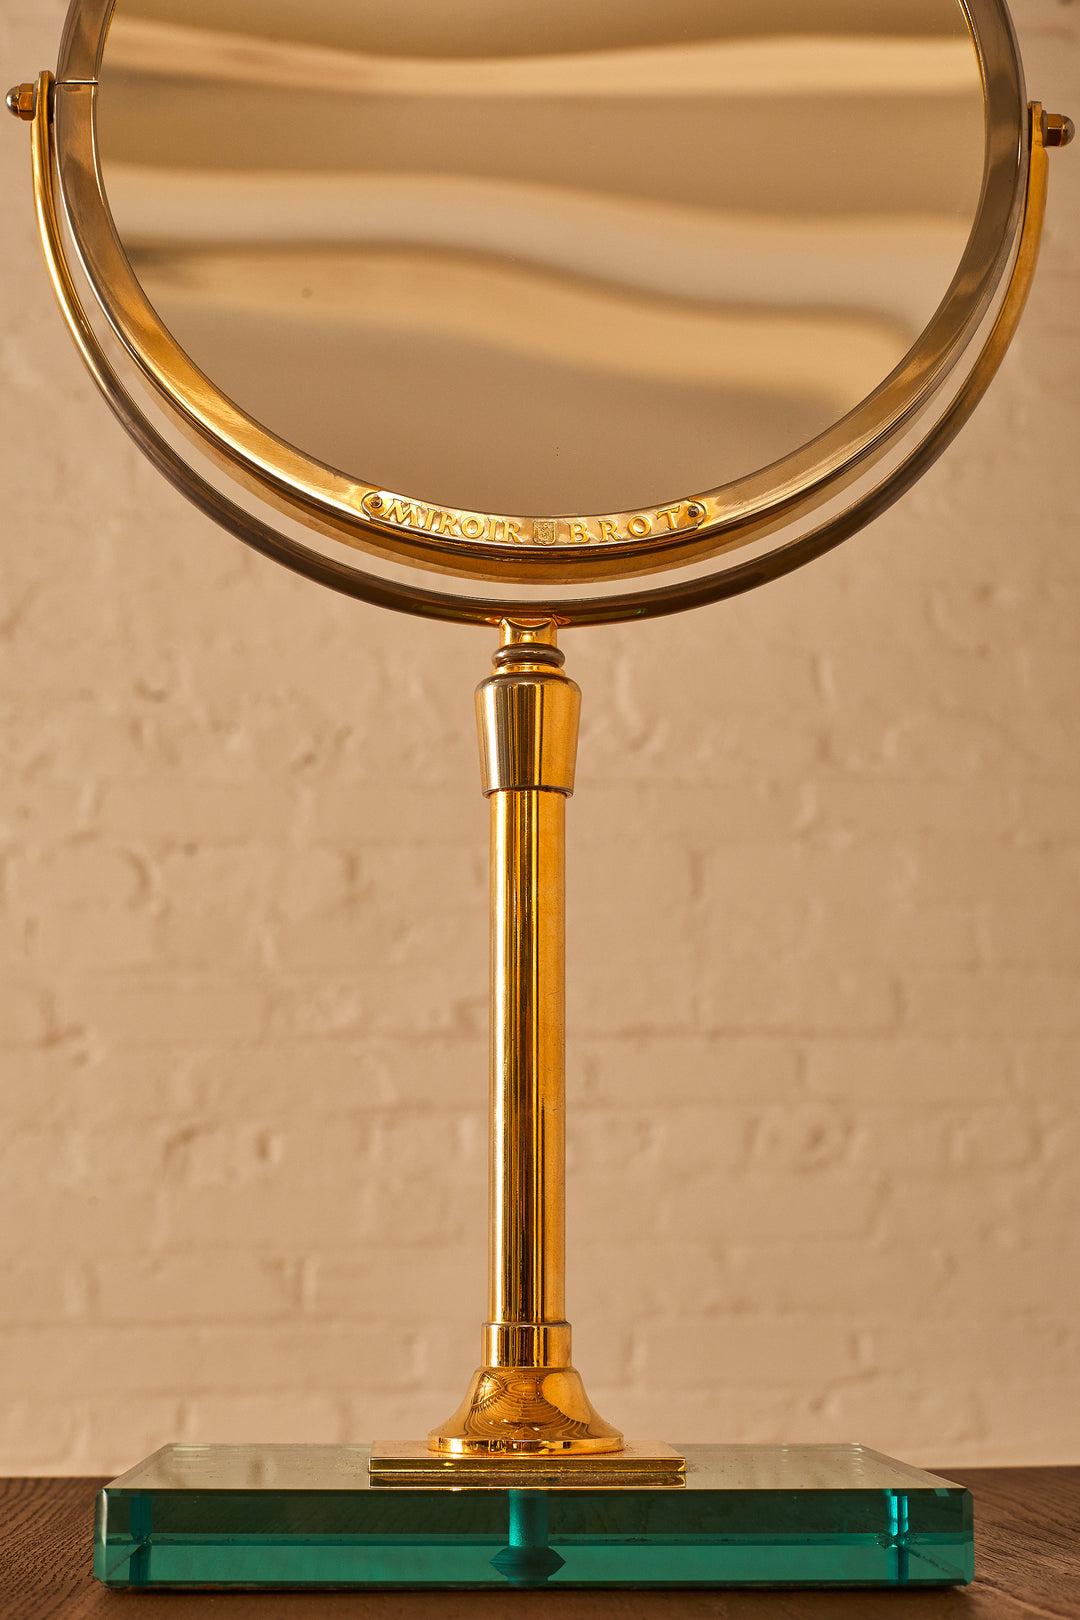 Un élégant miroir de courtoisie français du célèbre fabricant Miroir Brot. Fabrication et matériaux de très haute qualité. Il est réversible avec un miroir grossissant sur le côté opposé, avec une hauteur réglable et une base en verre bleu. Fabriqué